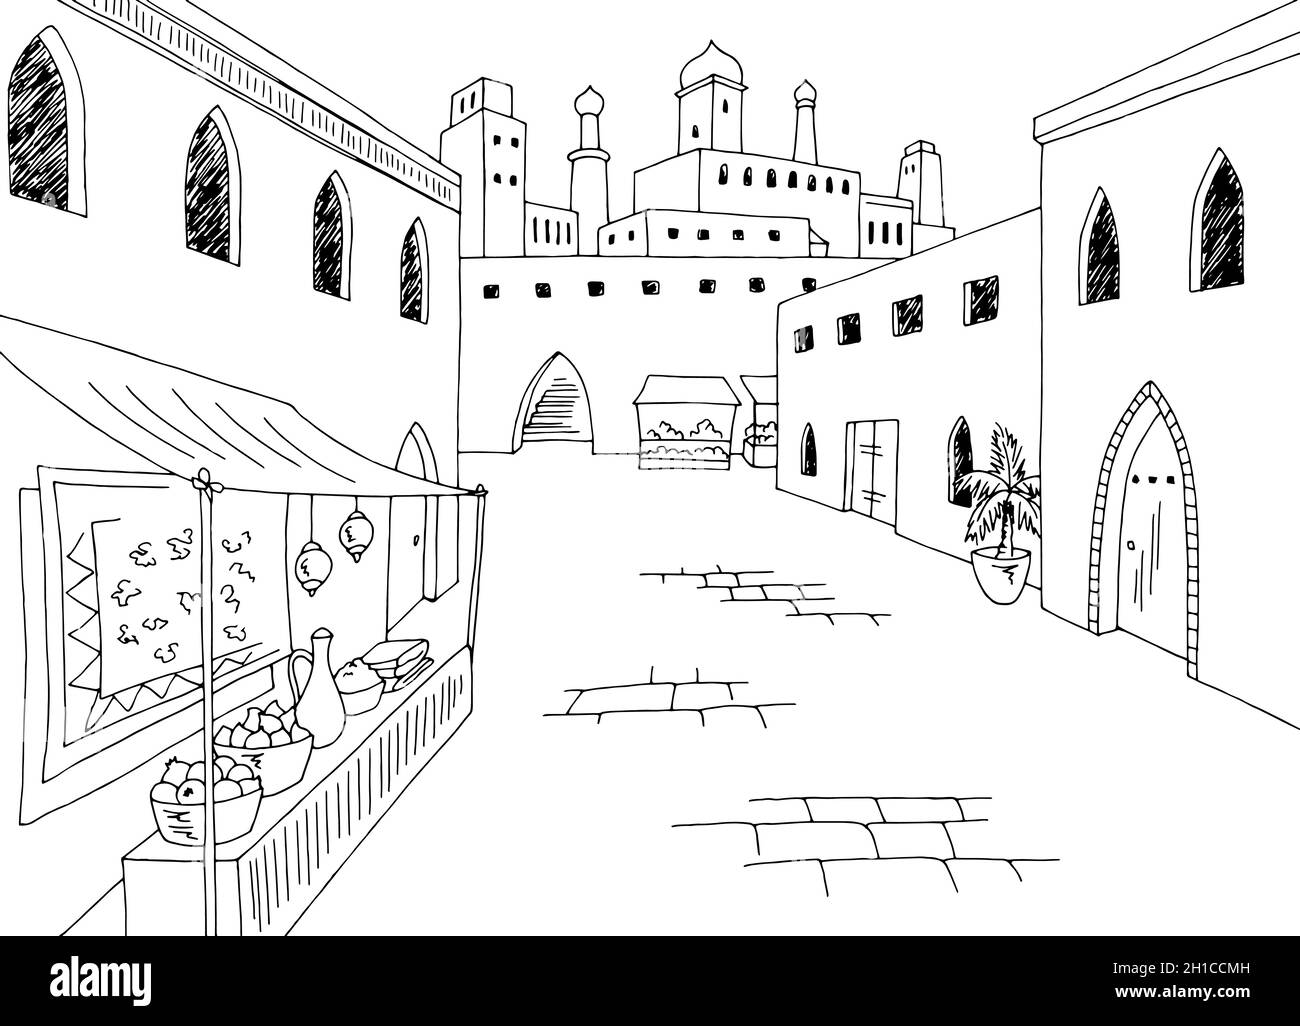 Alte arabische Straßengrafik schwarz weiß Stadt Landschaft Skizze Illustration Vektor Stock Vektor